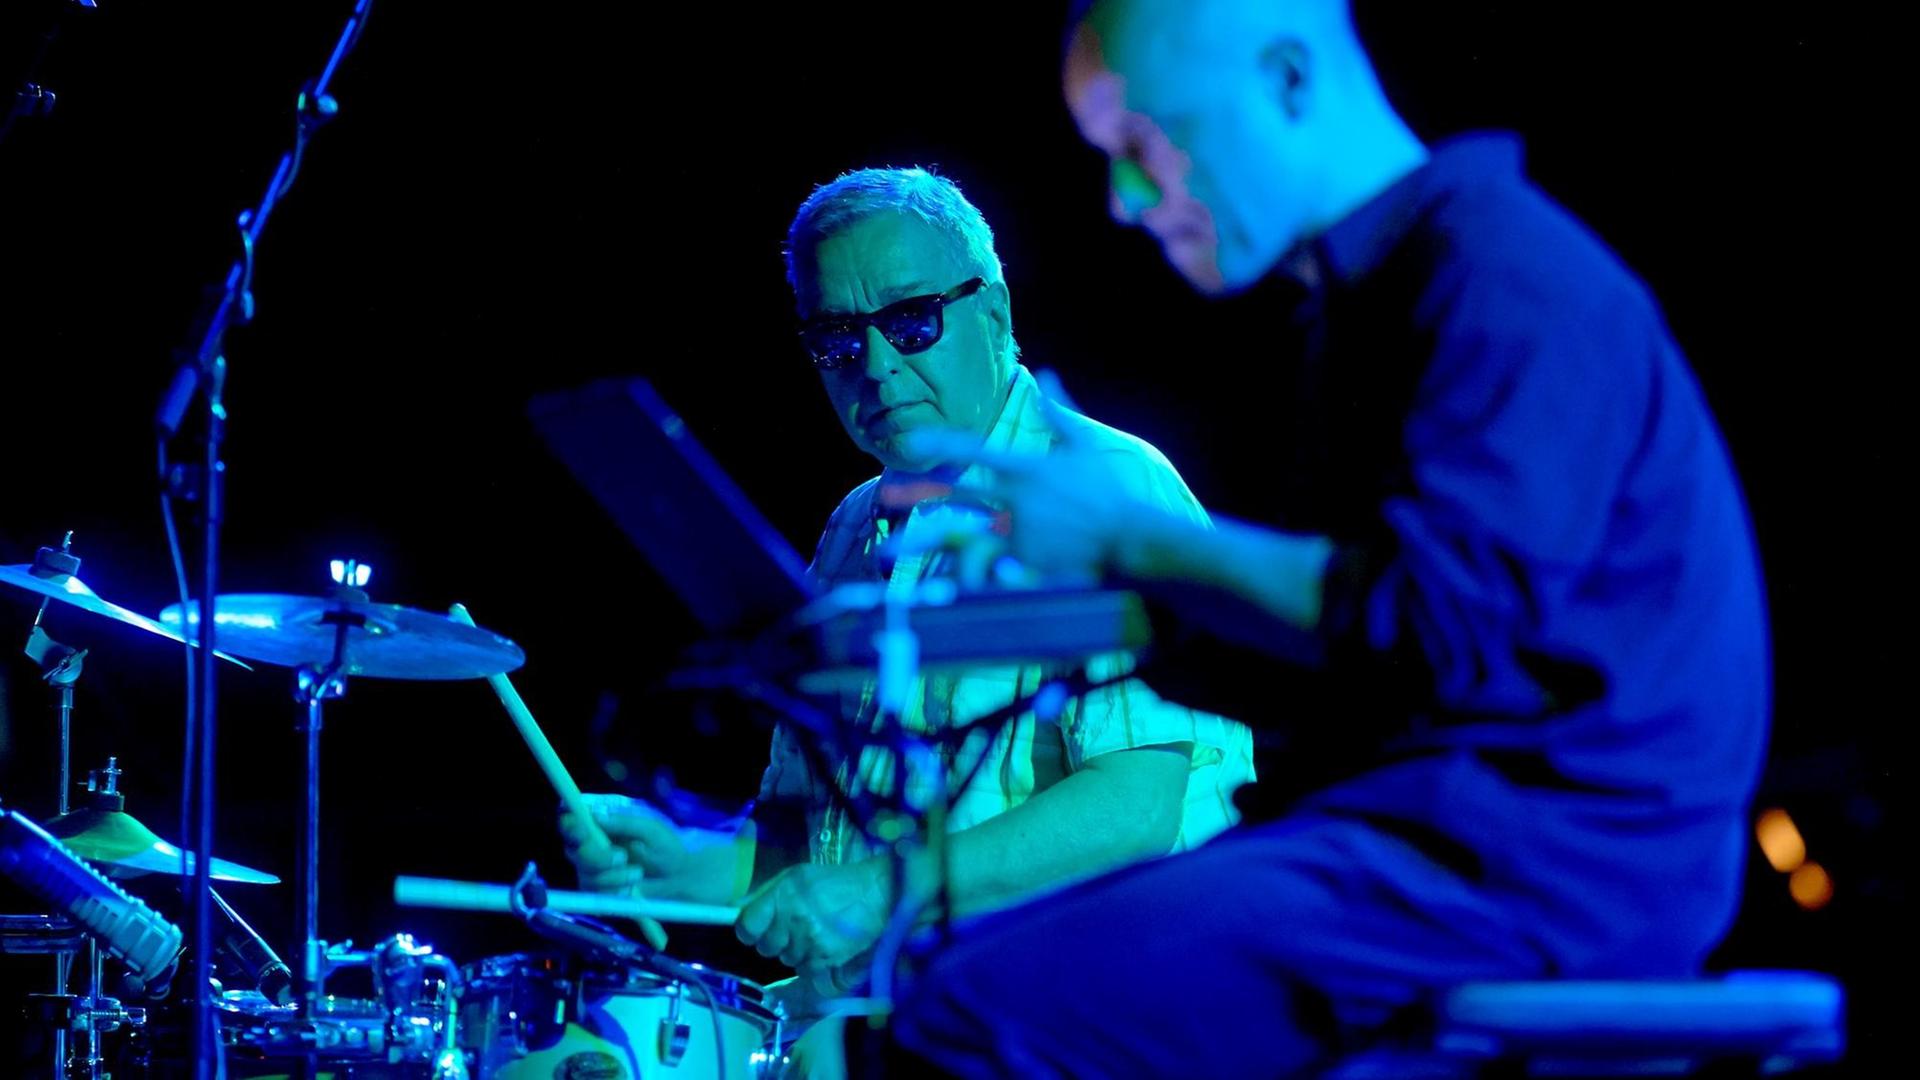 Das deutsche Duo Jaki Liebezeit (Schlagzeug) und Marcus Schmickler (r, elektronic) spielt am 08.06.2014 auf dem Moers Festival.